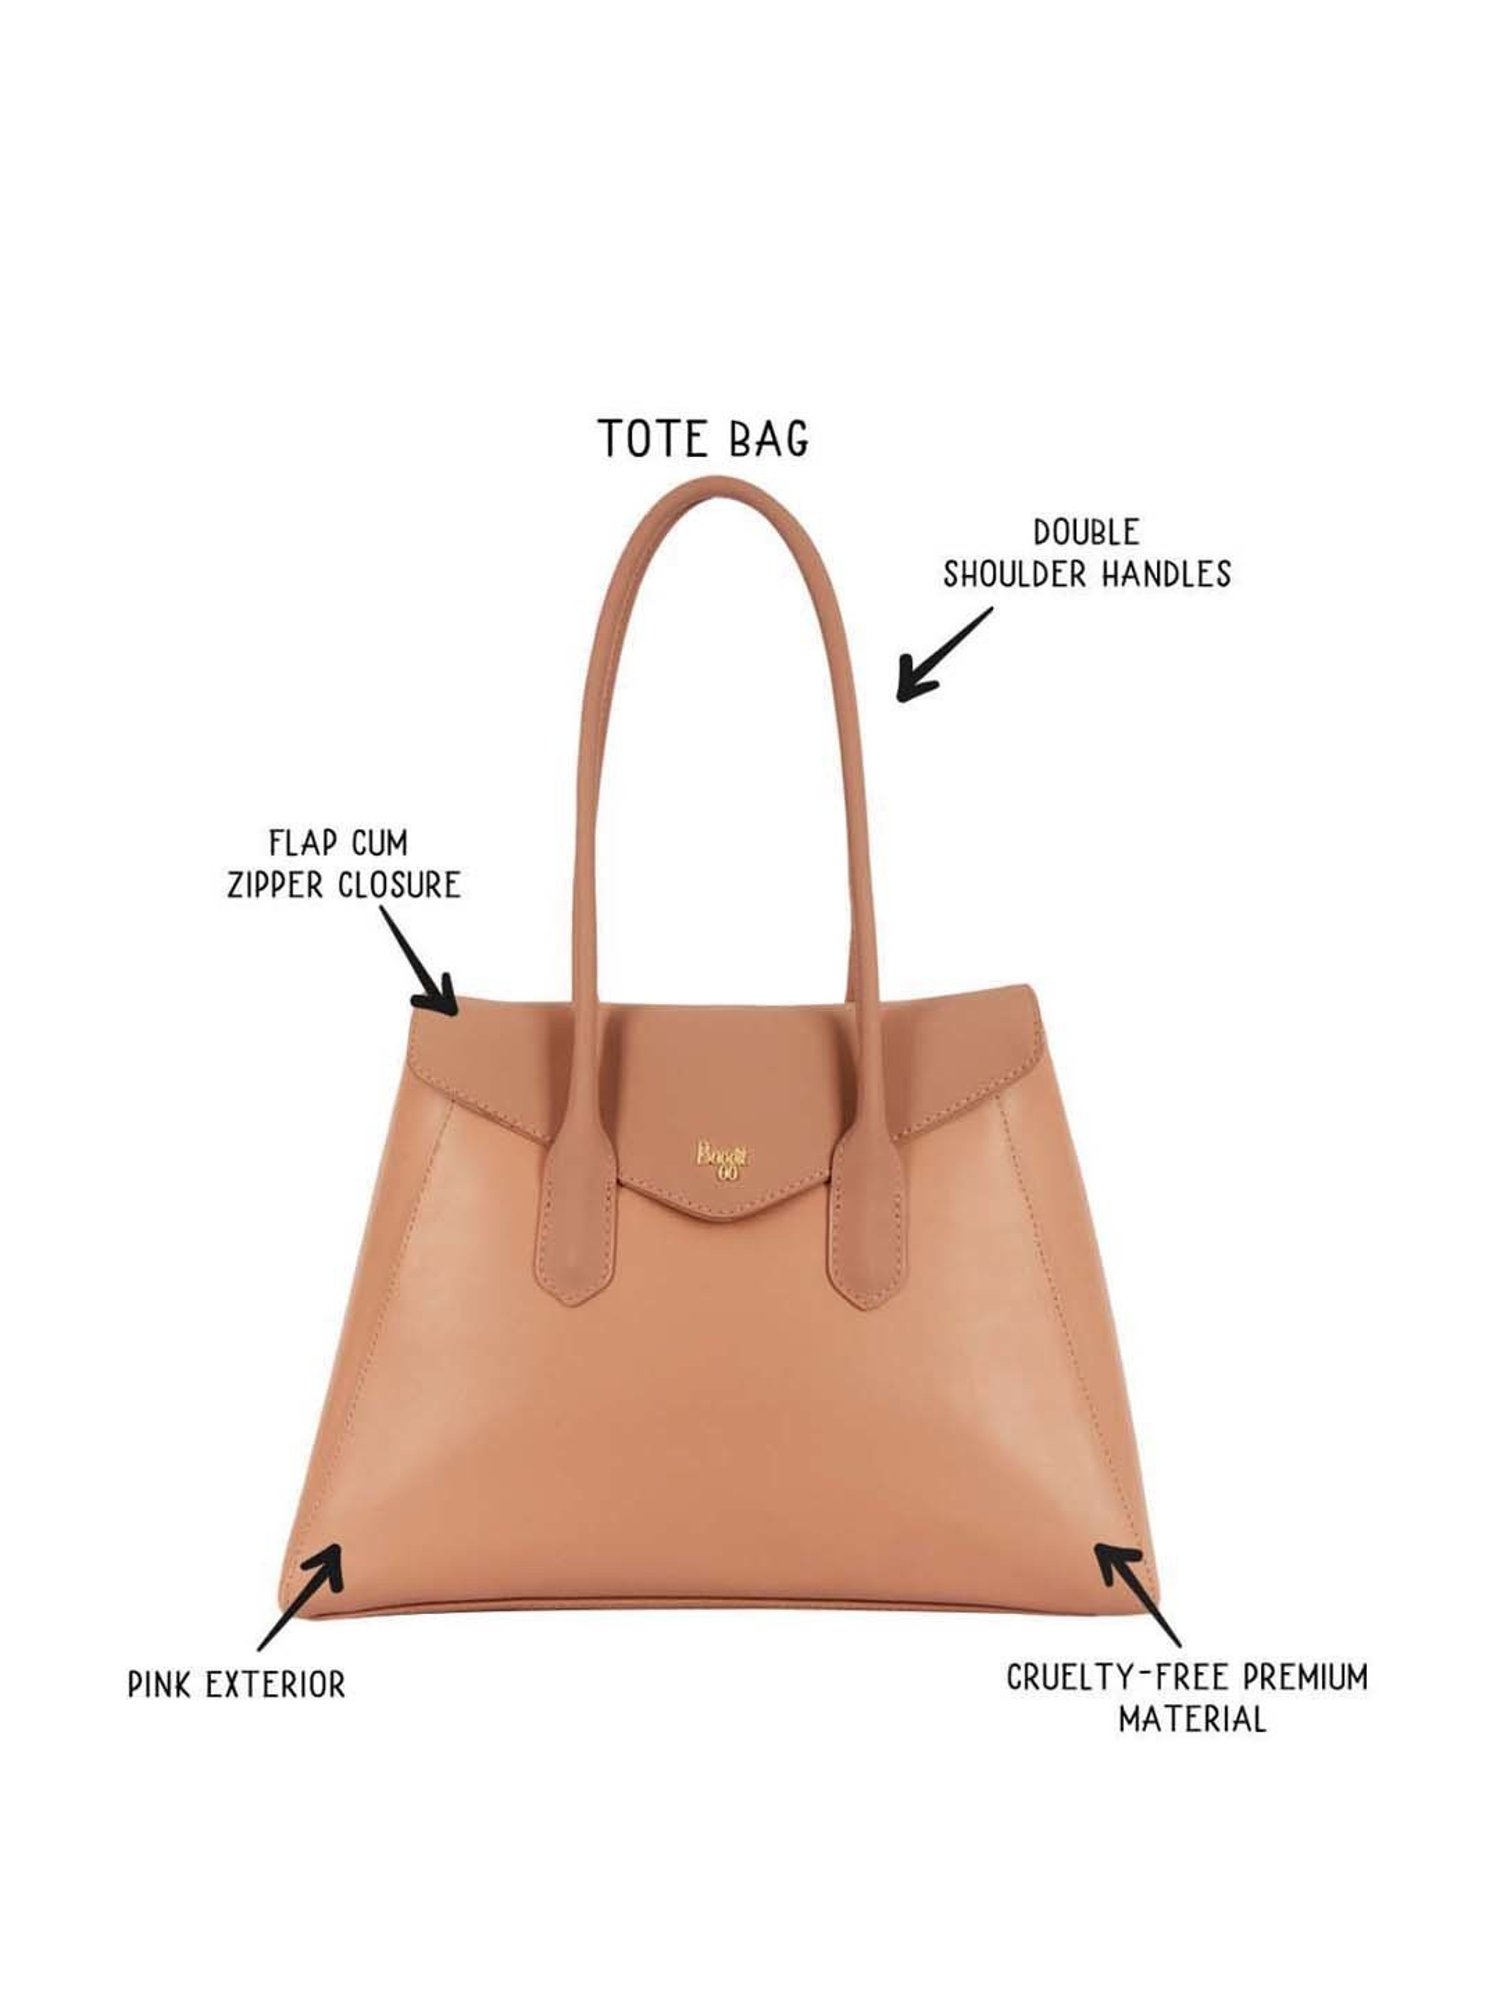 Buy Yelloe Orange Printed Large Tote Bag at Best Price @ Tata CLiQ